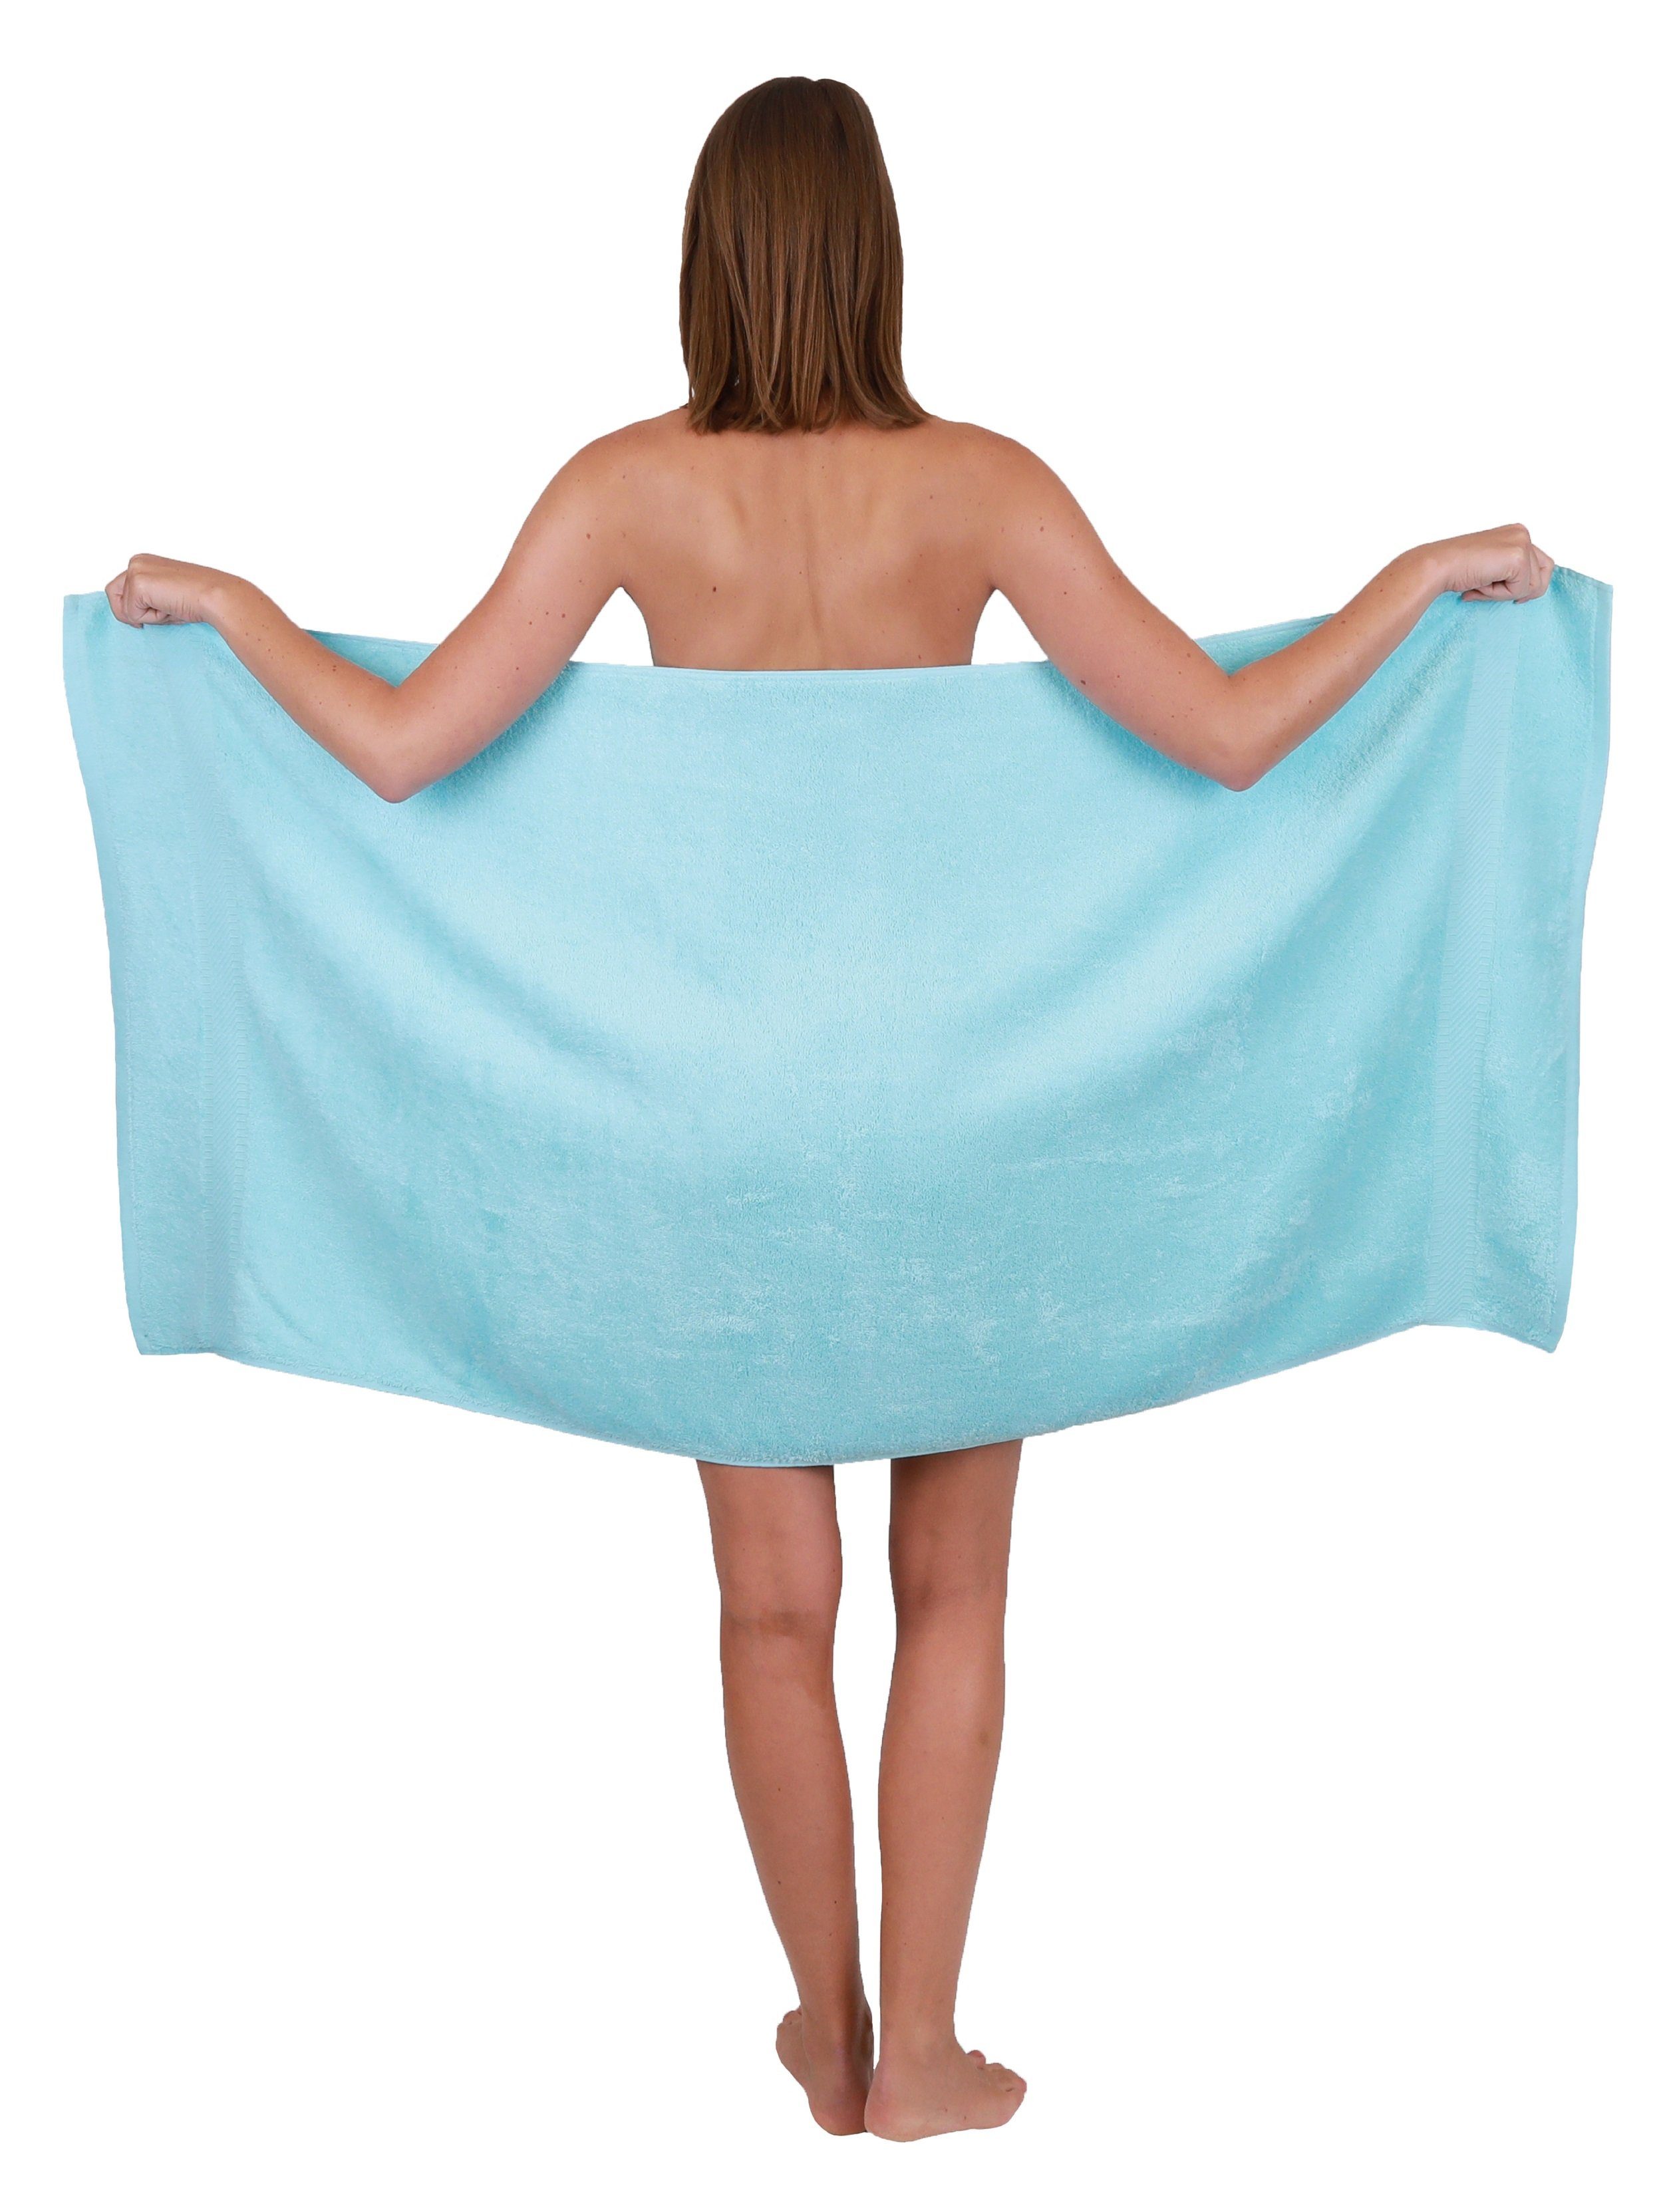 Betz Handtuch Set 10-tlg. Farbe 4 türkis, 100% Handtücher Duschtücher Baumwolle Set 6 Palermo und weiß